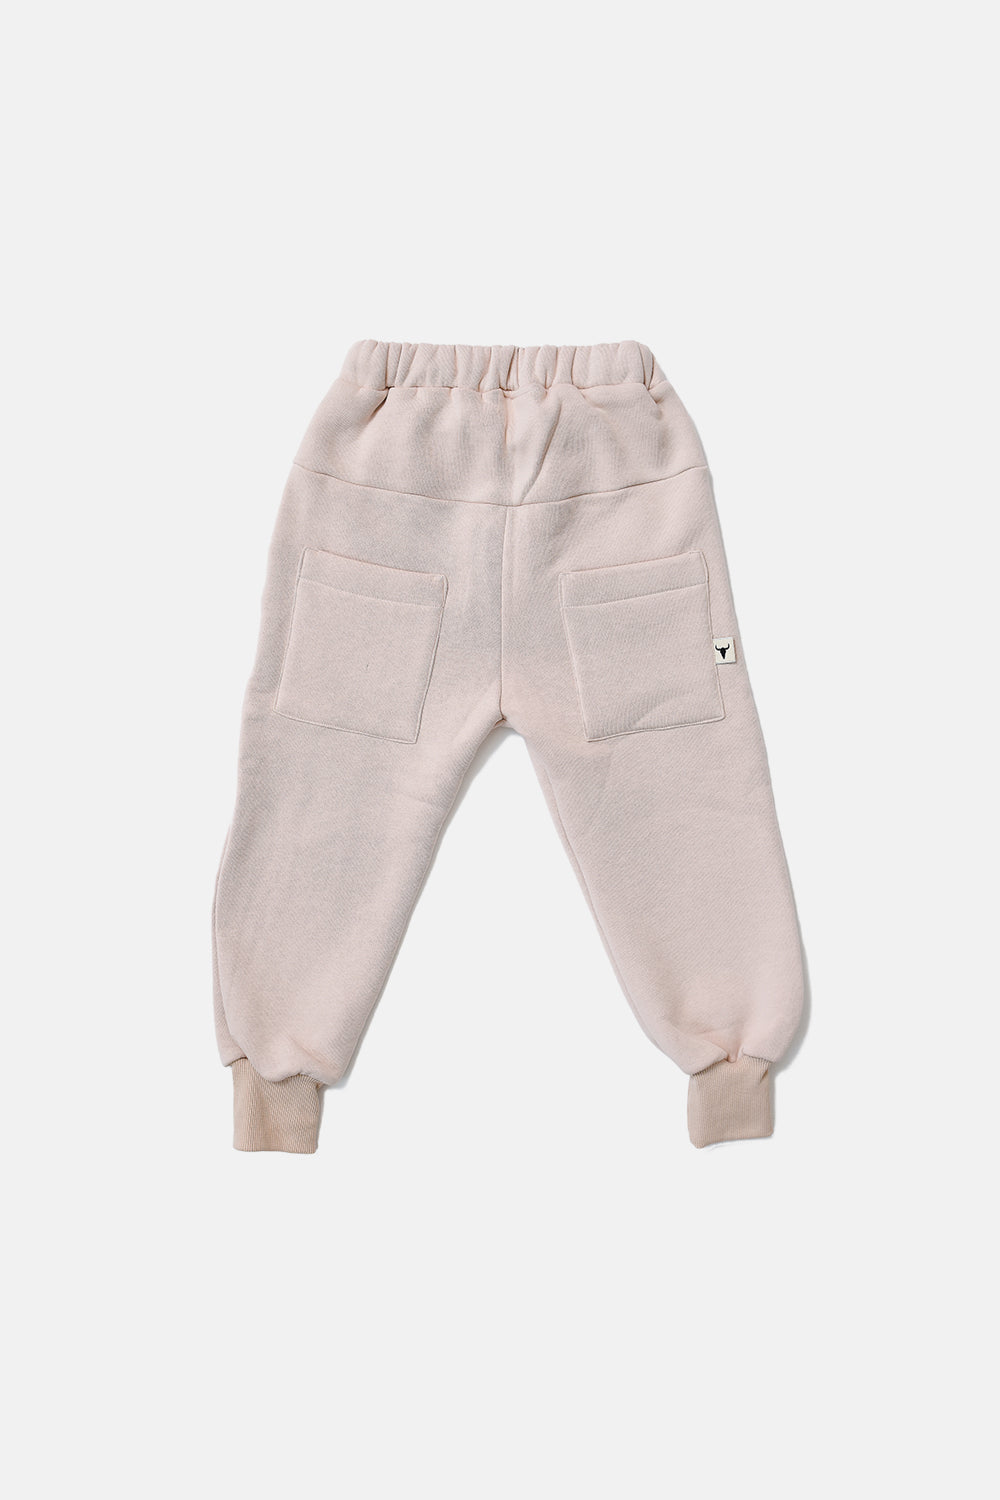 spodnie dziecięce -  BOOSO PANTS beige